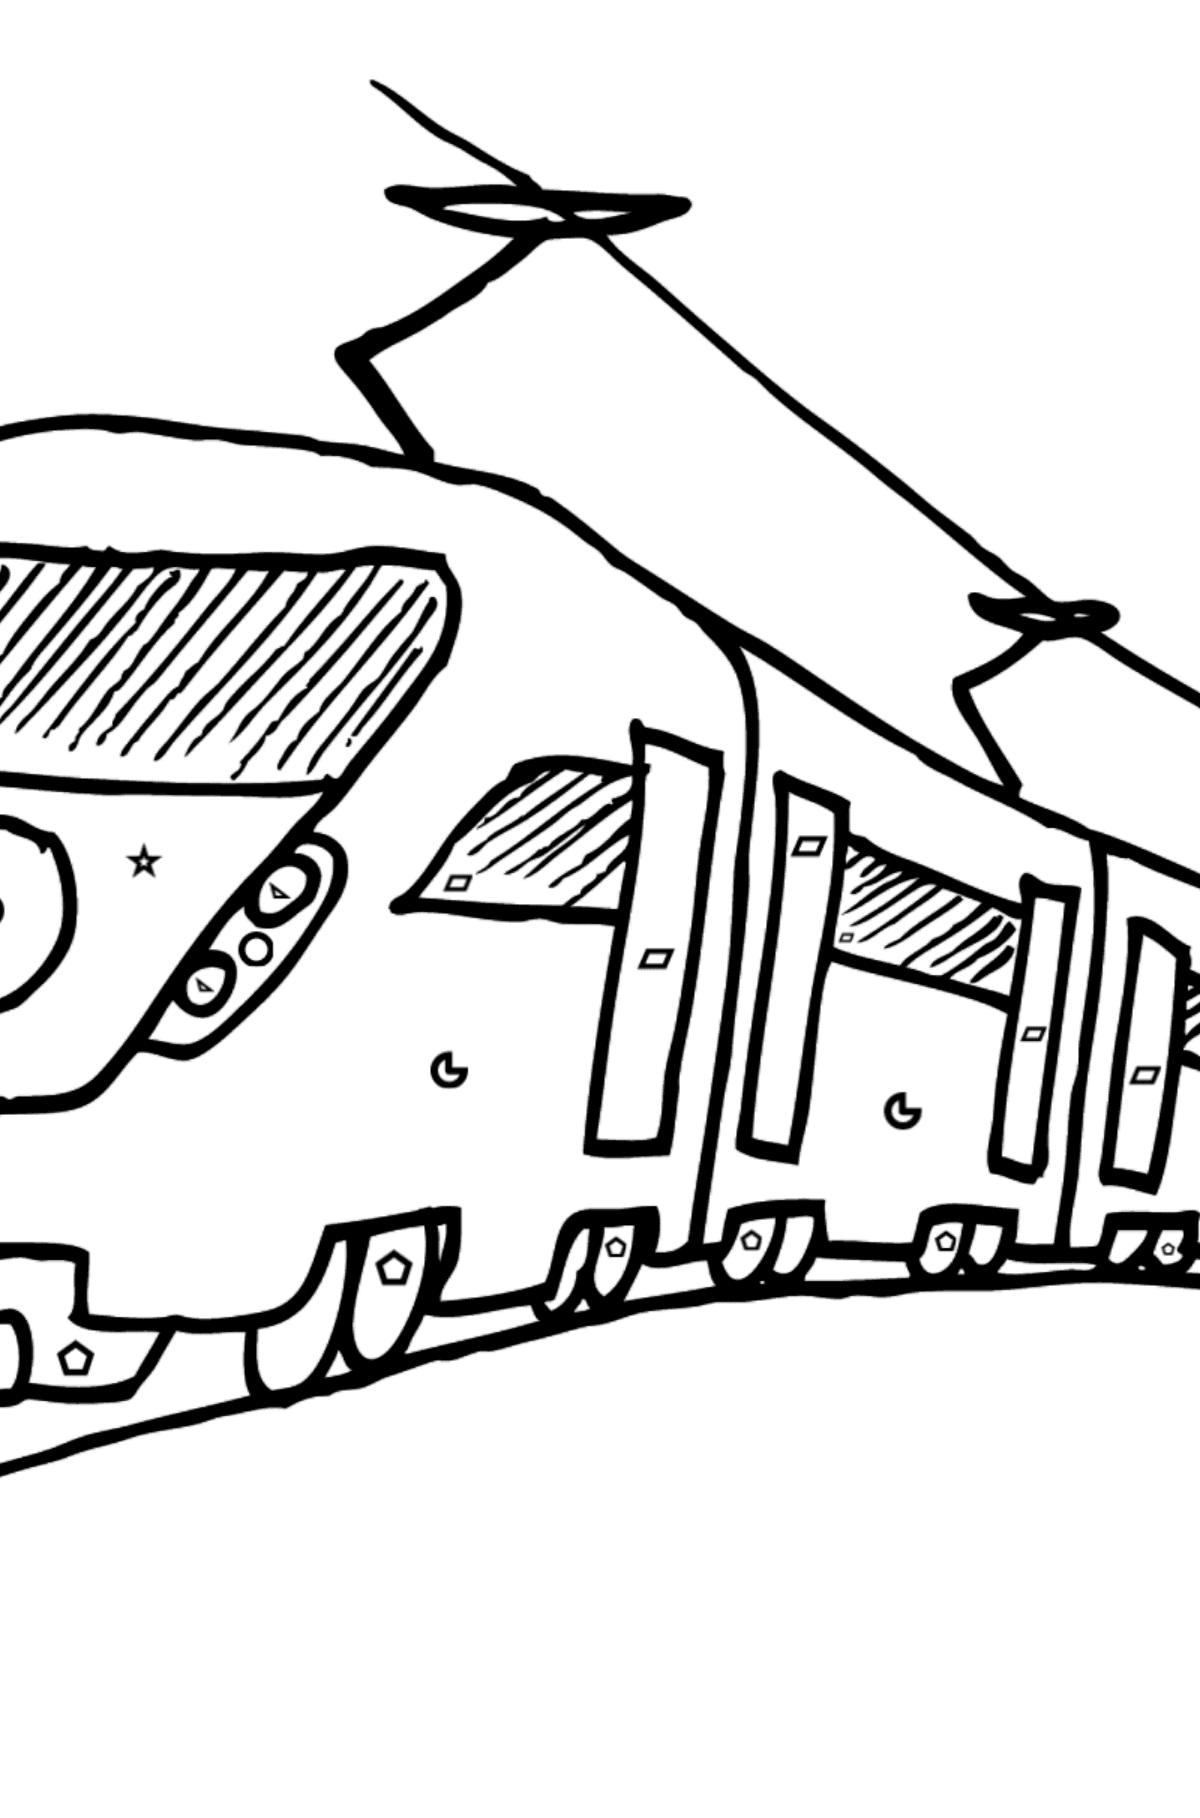 Dibujo para Colorear de Tren de Pasajeros - Colorear por Formas Geométricas para Niños